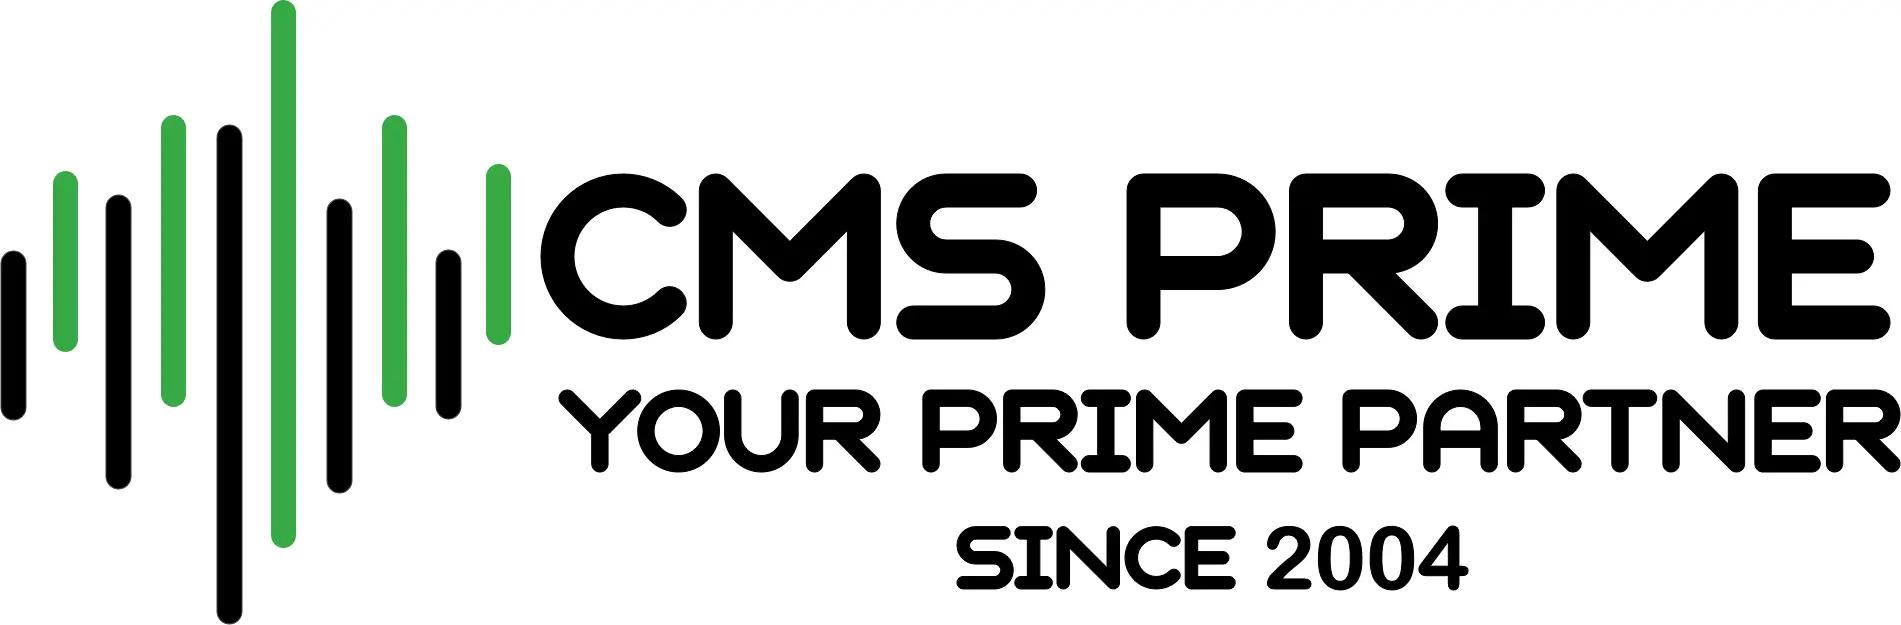 CMS Prime